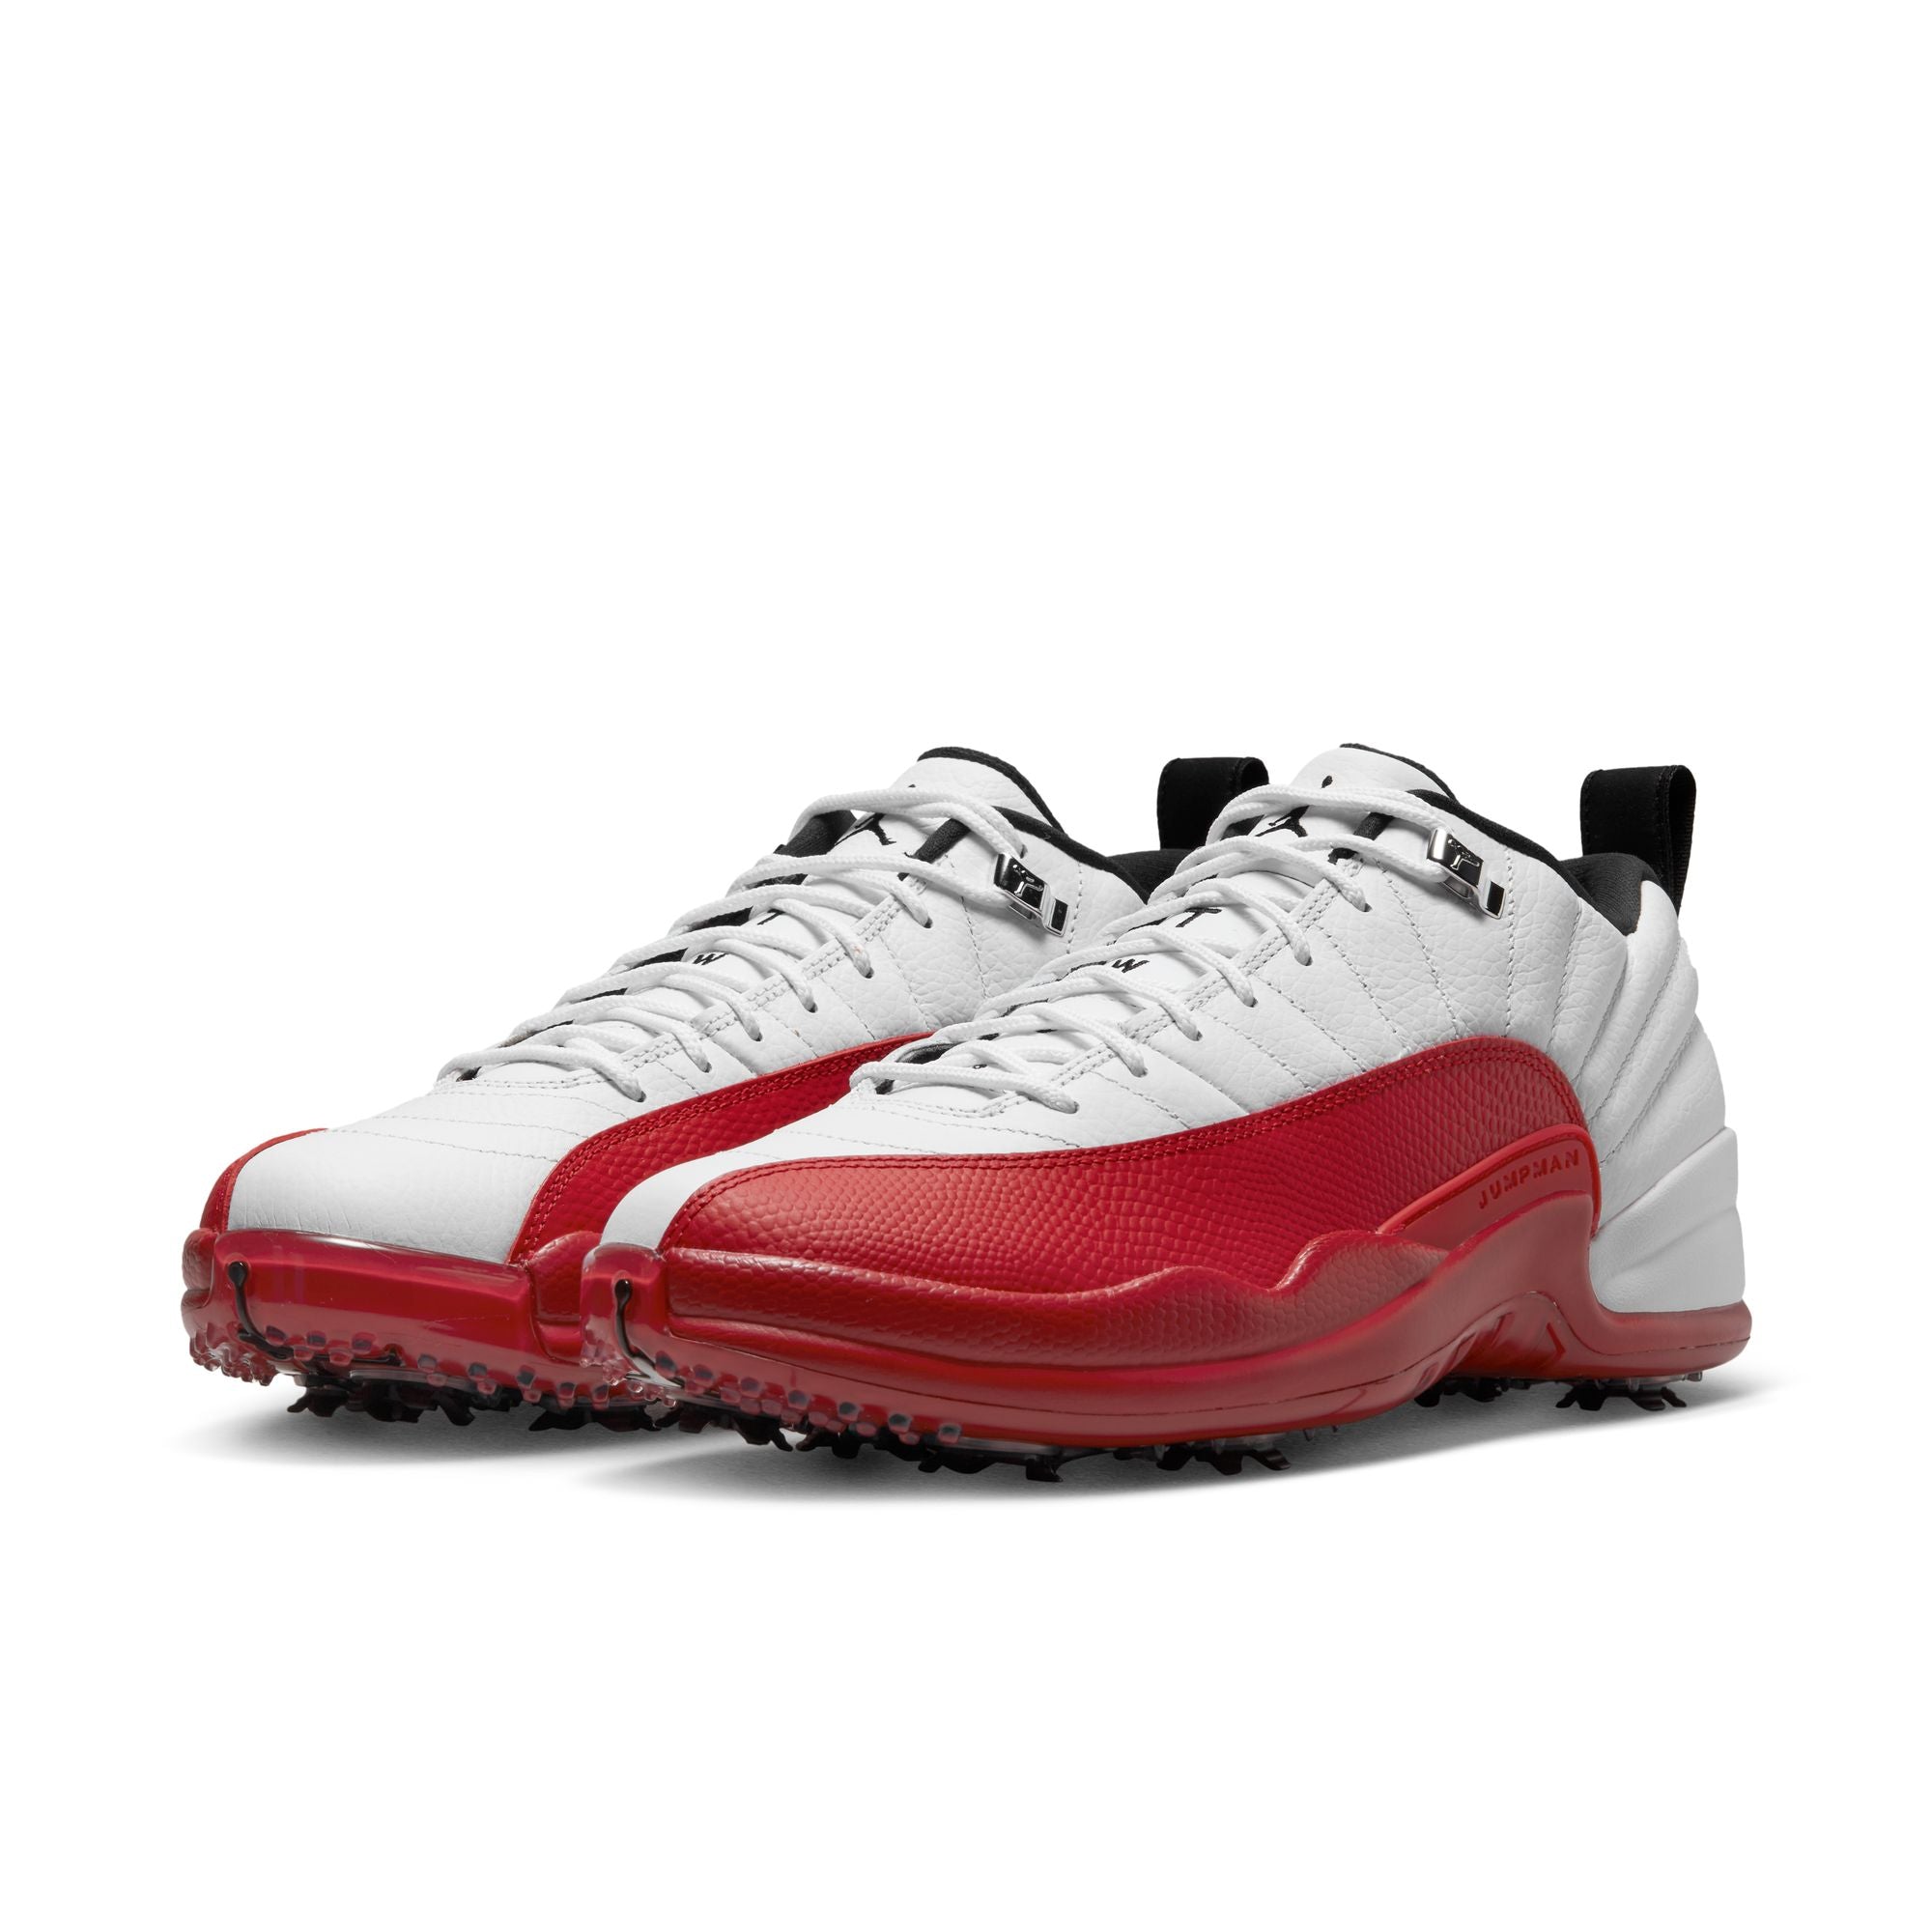 Michael Jordan Air Jordan 12 Low Golf Shoes